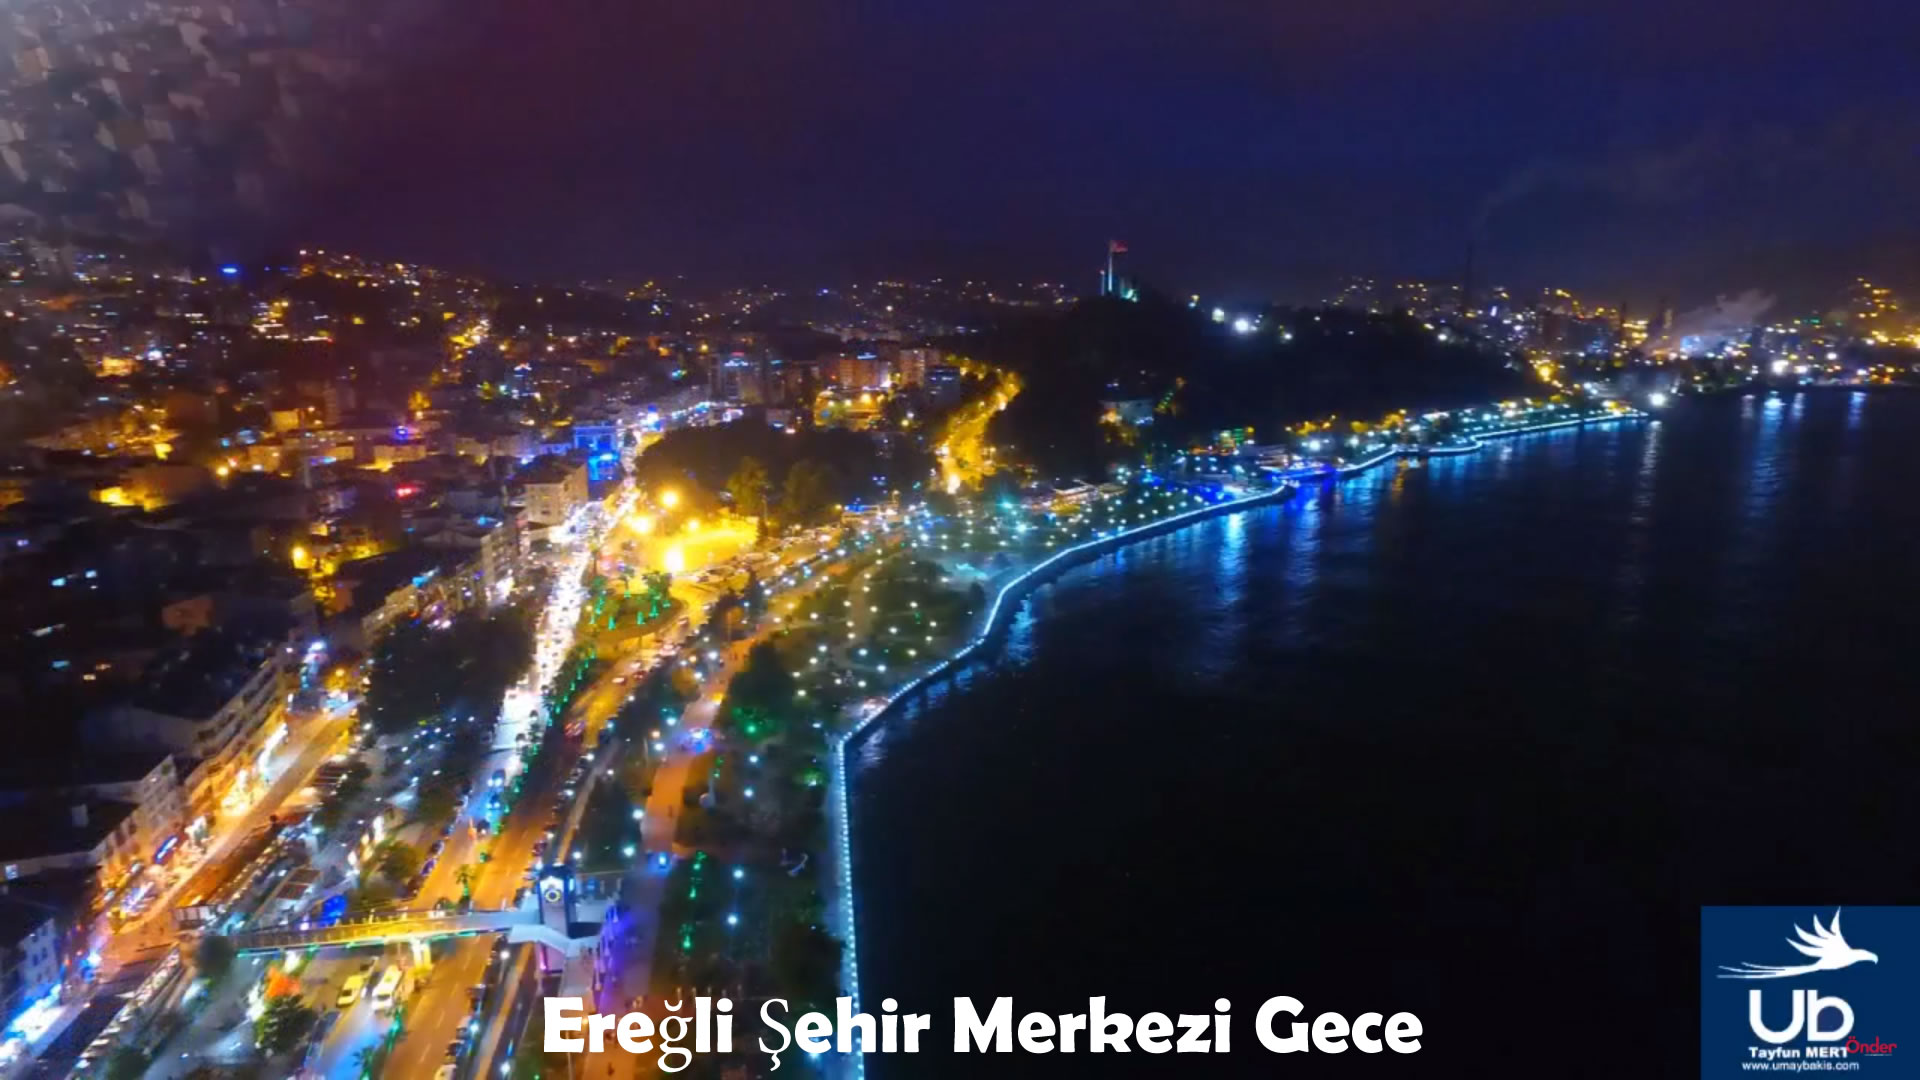 Eregli City Center at Night